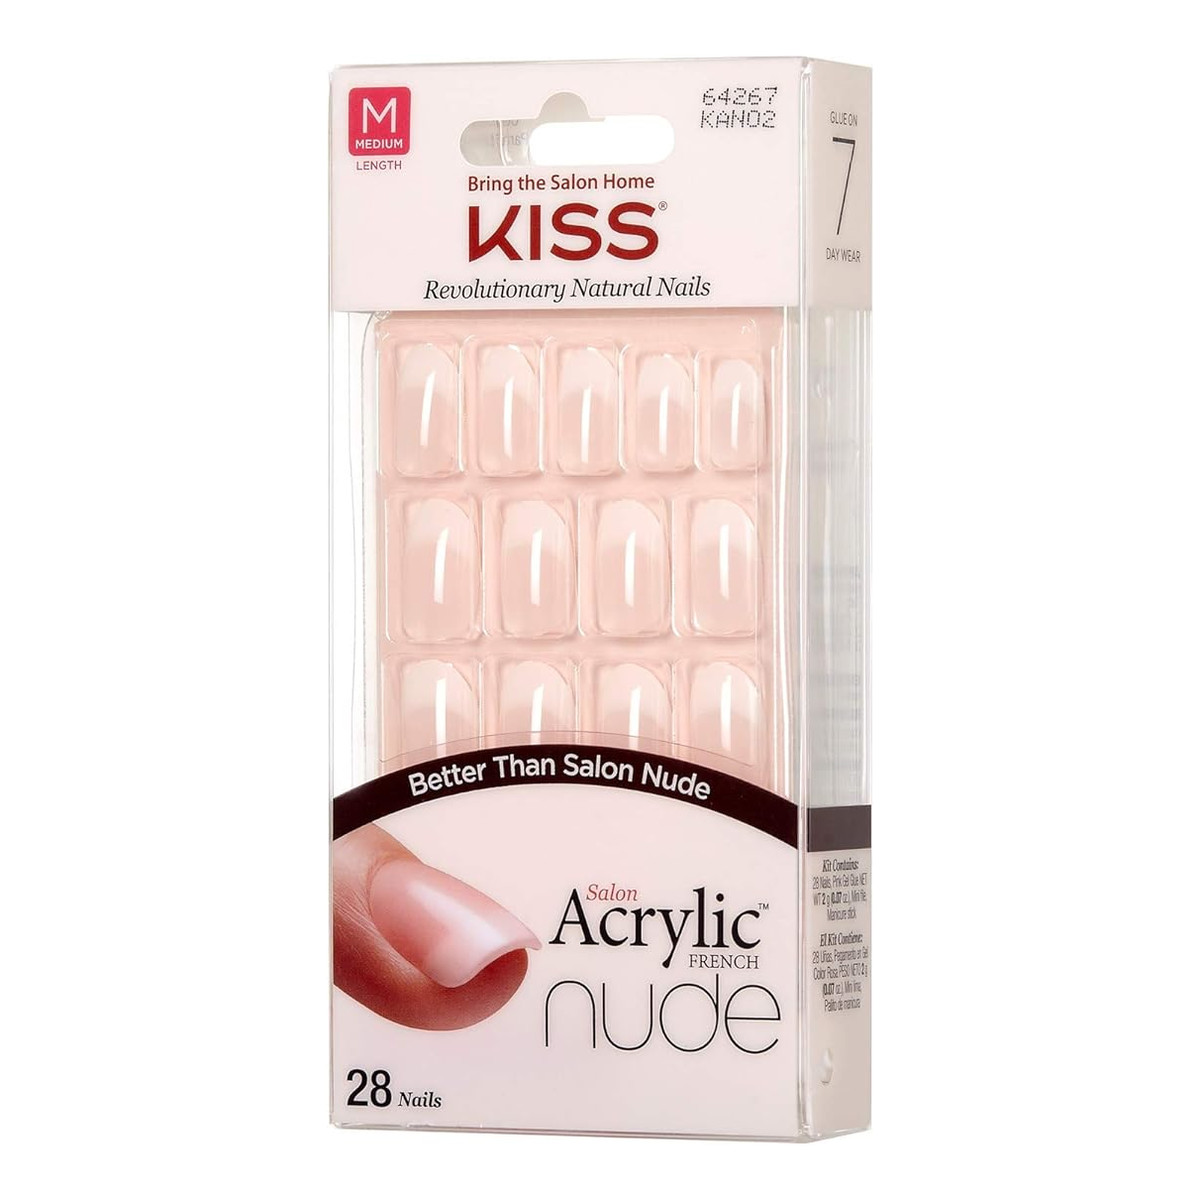 Kiss Salon Acrylic French Nude Sztuczne paznokcie Gracefull (M) 28szt.